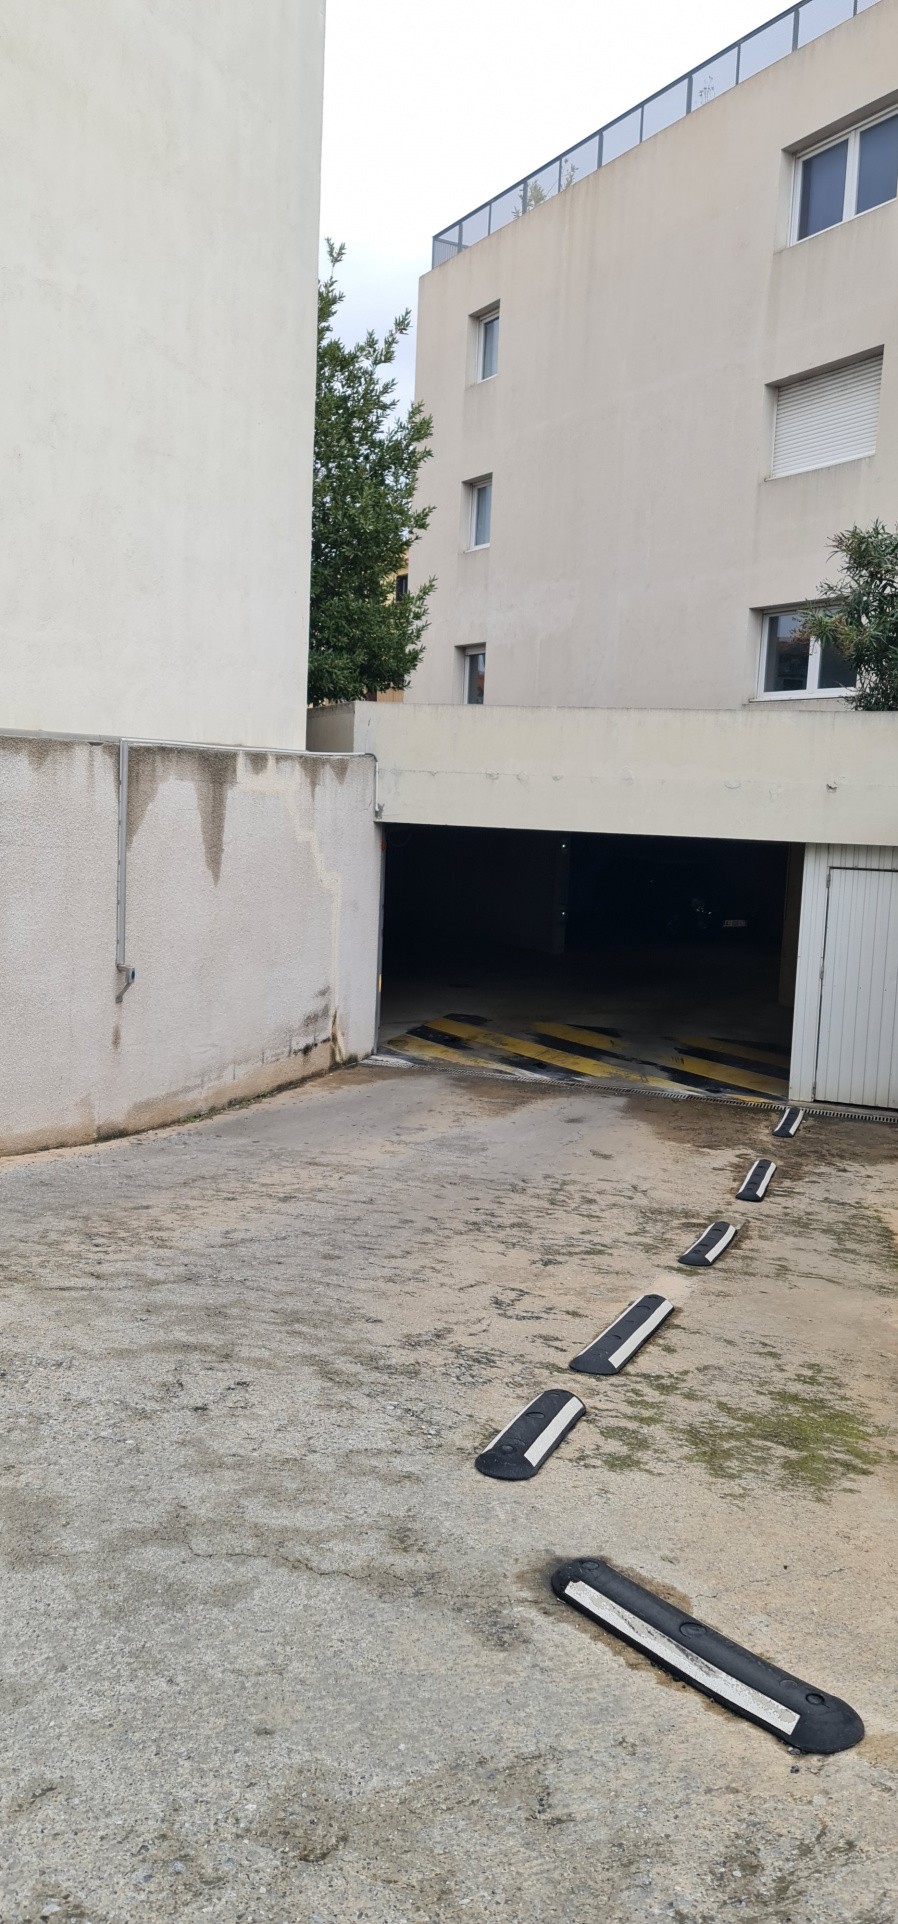 Vente Garage / Parking à Perpignan 0 pièce